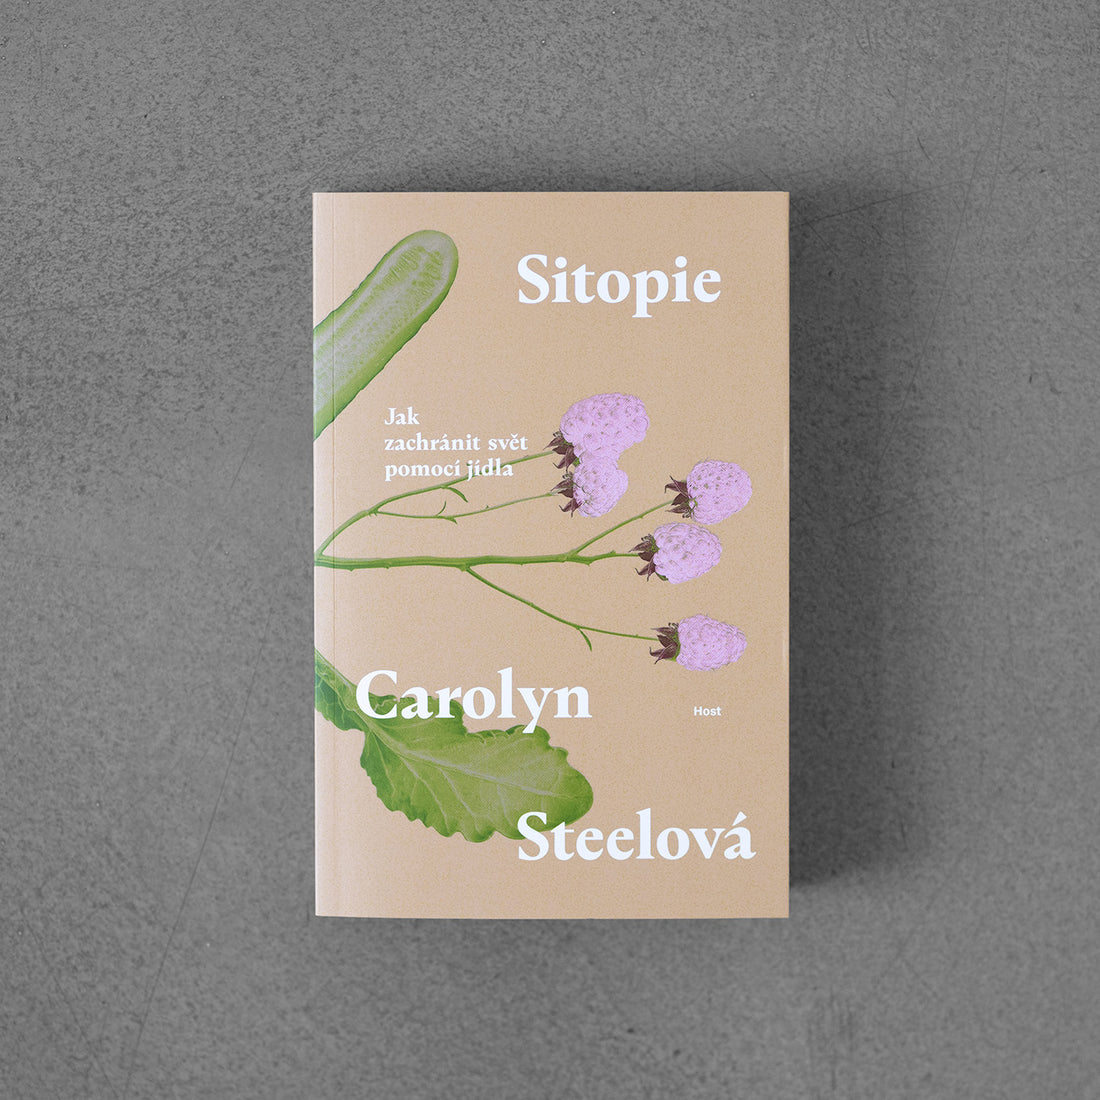 Sitopia – Carolyn Steel